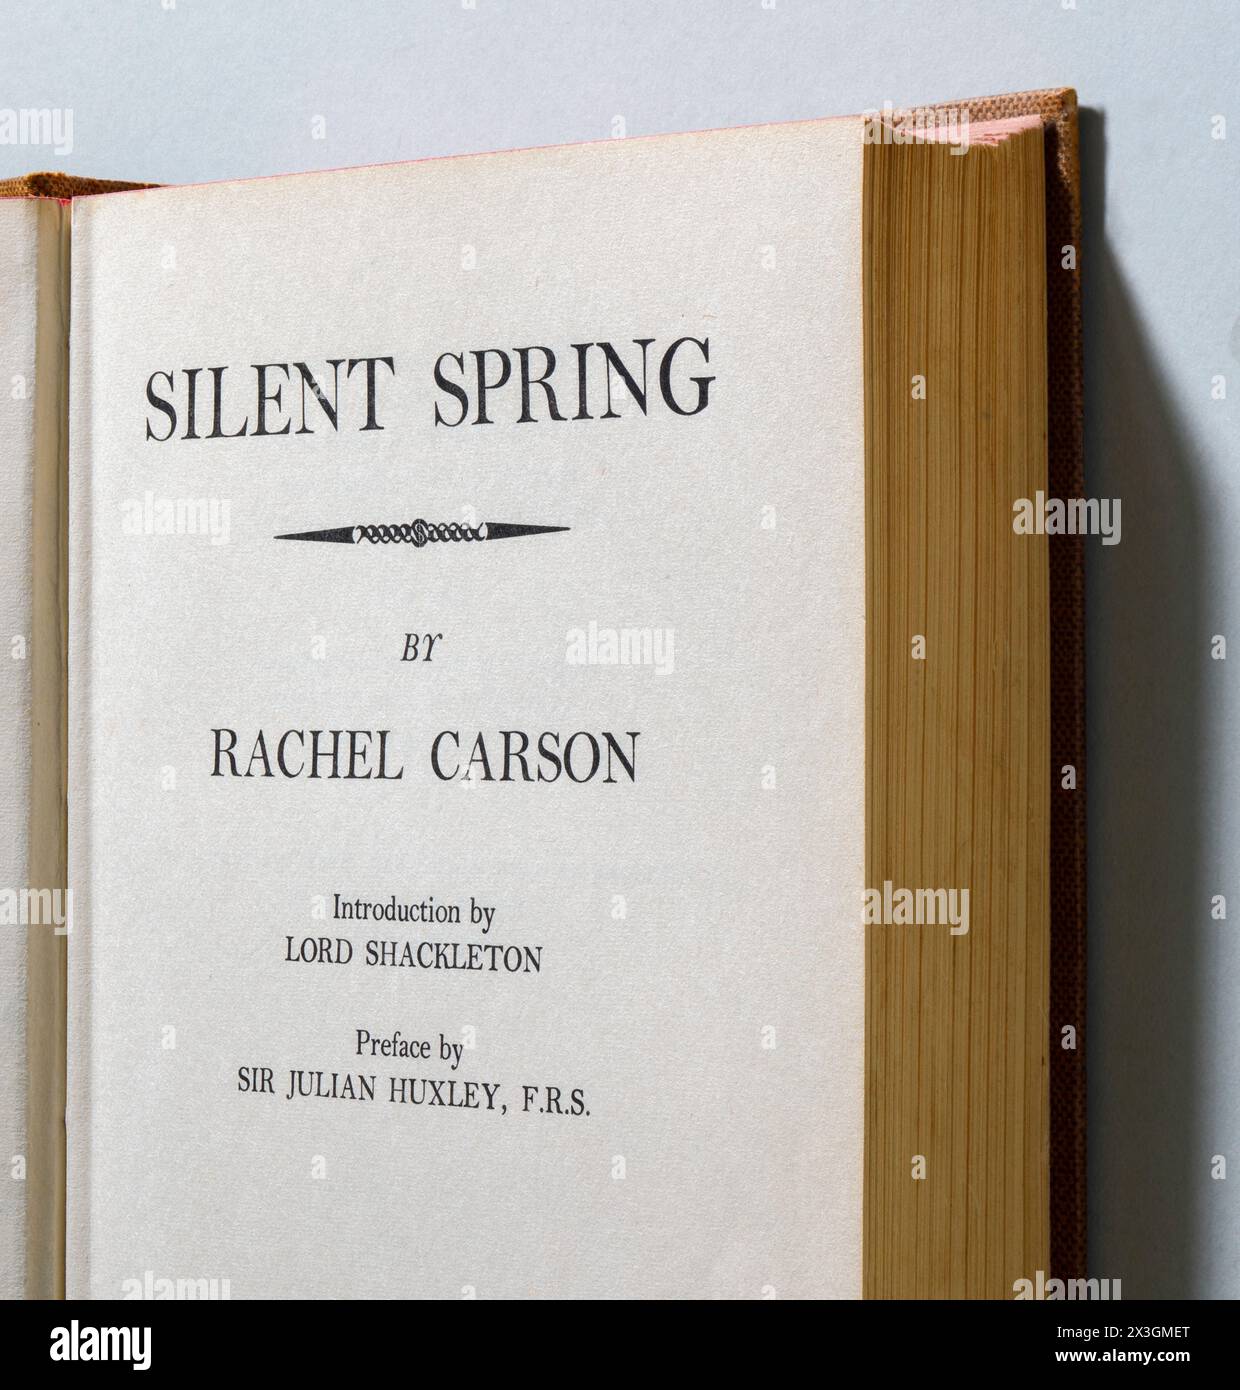 Silent Spring, ein umweltwissenschaftliches Buch von Rachel Carson, das 1962 veröffentlicht wurde. Das Buch enthüllte die Schäden, die durch den umfangreichen Einsatz von Pestiziden an Wildtieren entstanden sind. Trotz der Kritik der Presse und der Versuche der chemischen Industrie, das Buch zu verbieten, gelang es Carson, das öffentliche Bewusstsein für die Umwelt zu schärfen. Dies führte zu Veränderungen in der Regierungspolitik und inspirierte die ökologische Bewegung. Stockfoto